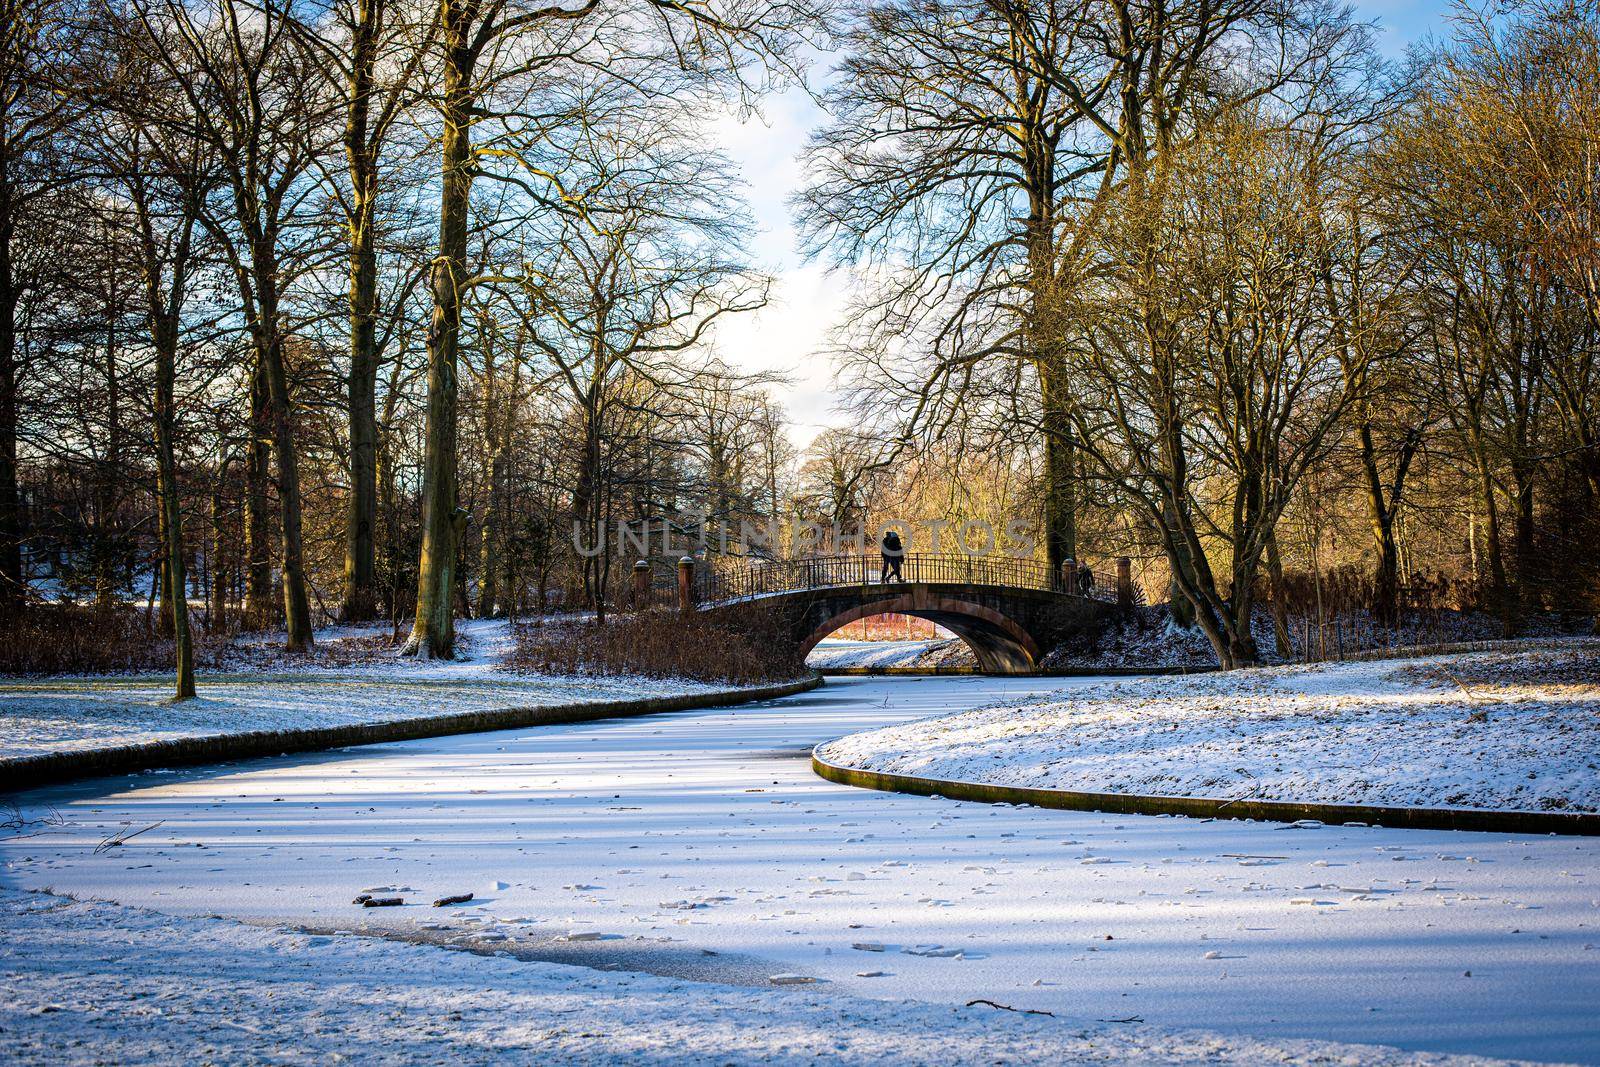 Copenhagen, Denmark - January 31, 2021: People enjoying a snowy winter day in Frederiksberg Gardens.